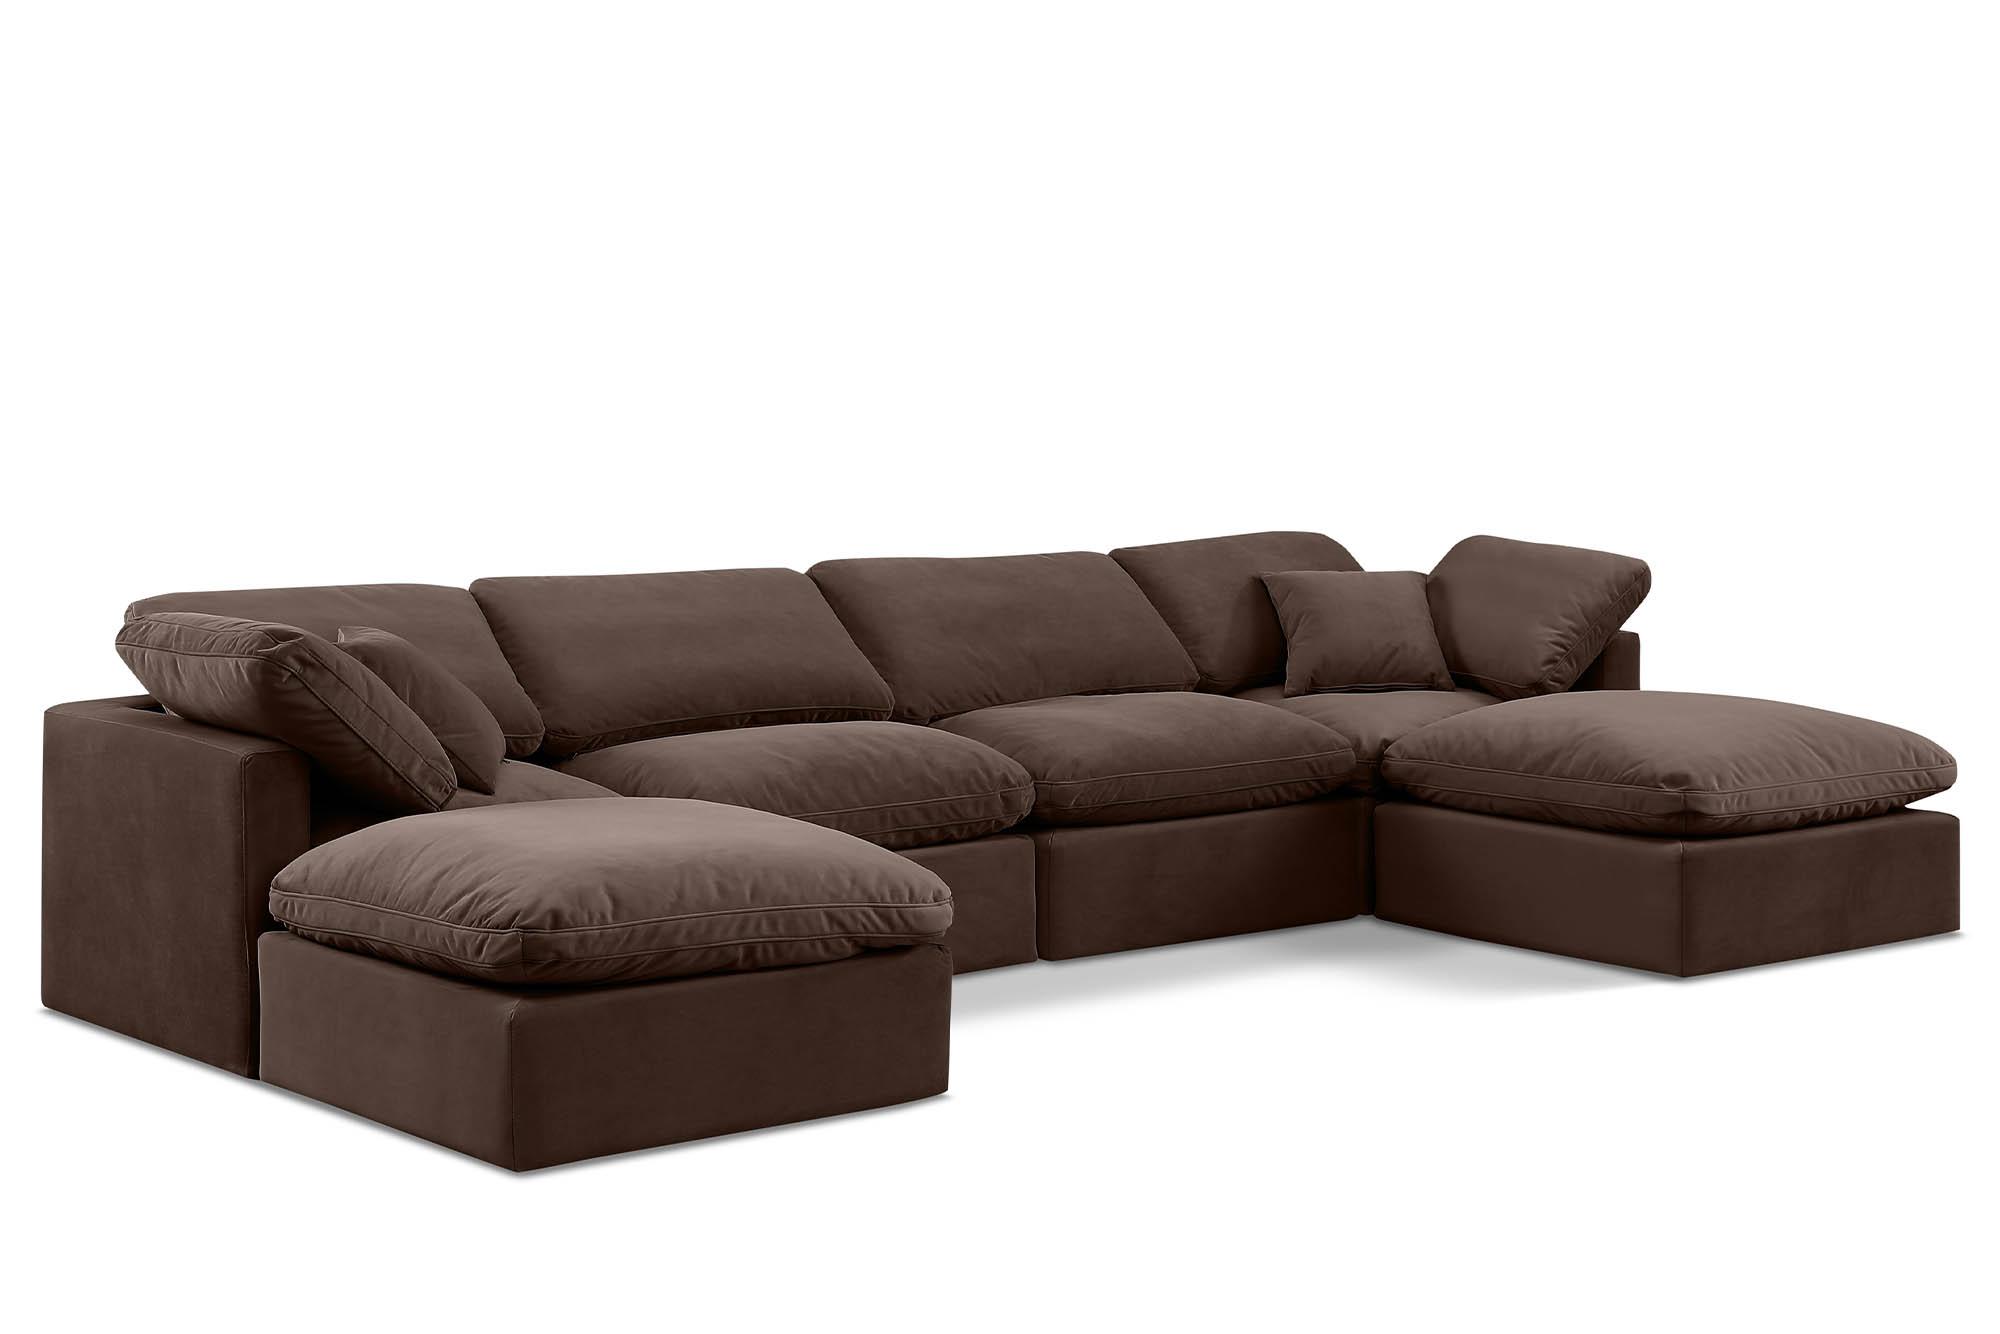 Contemporary, Modern Modular Sectional Sofa INDULGE 147Brown-Sec6B 147Brown-Sec6B in Brown Velvet